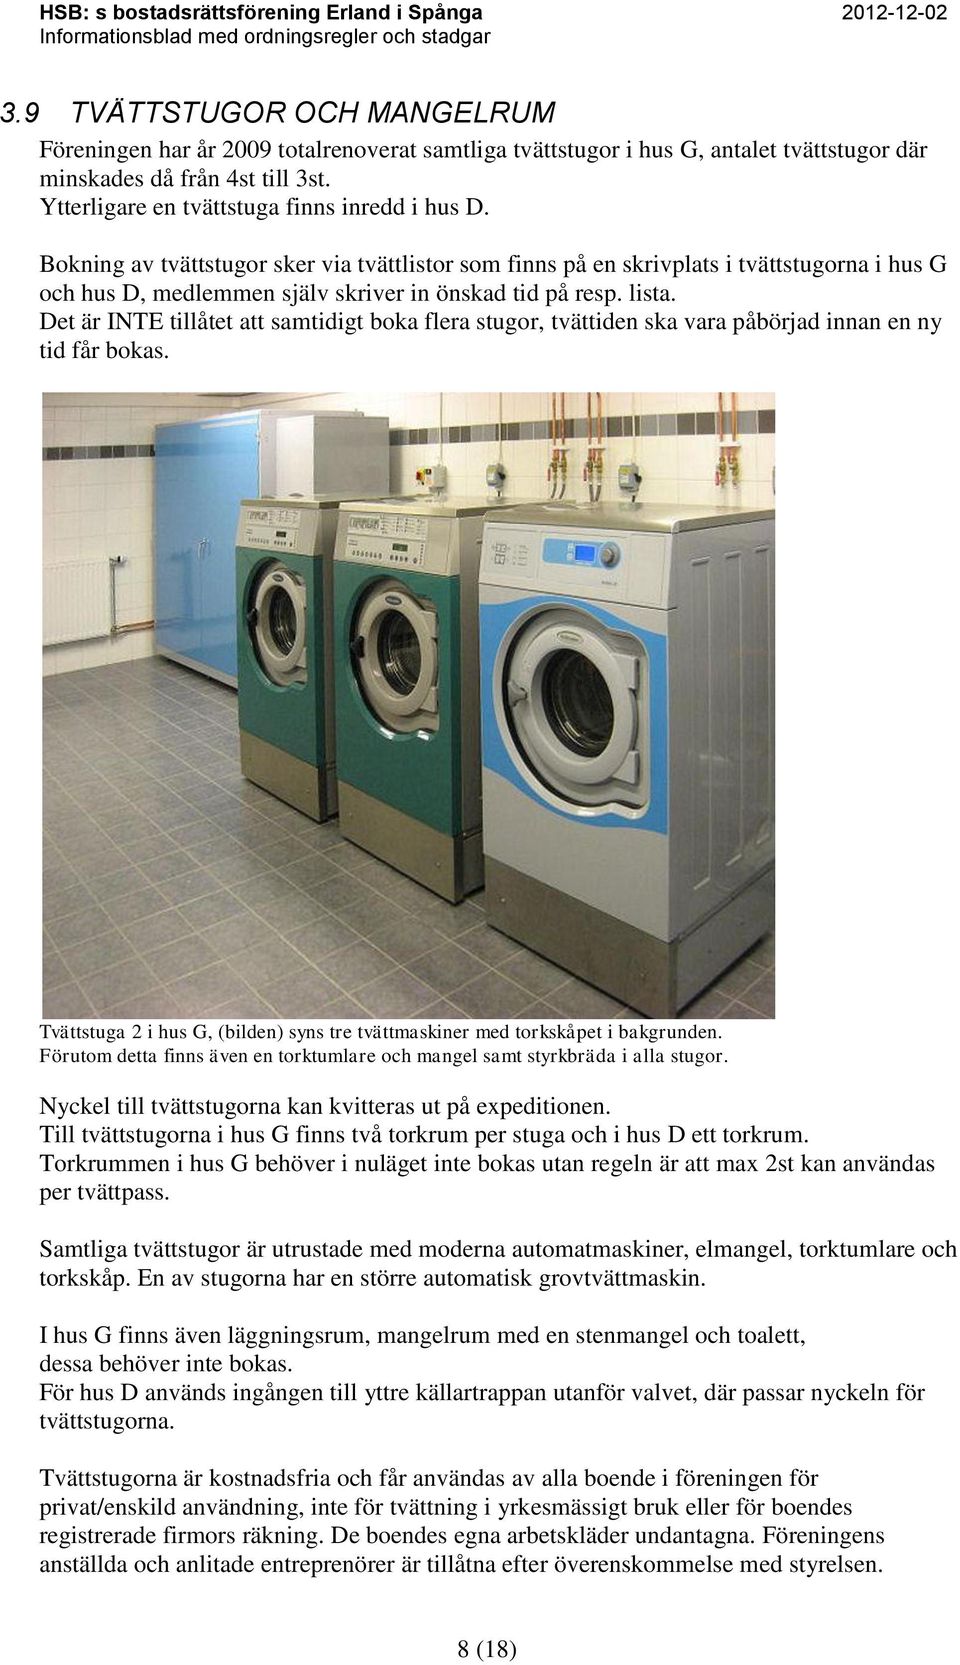 lista. Det är INTE tillåtet att samtidigt boka flera stugor, tvättiden ska vara påbörjad innan en ny tid får bokas. Tvättstuga 2 i hus G, (bilden) syns tre tvättmaskiner med torkskåpet i bakgrunden.